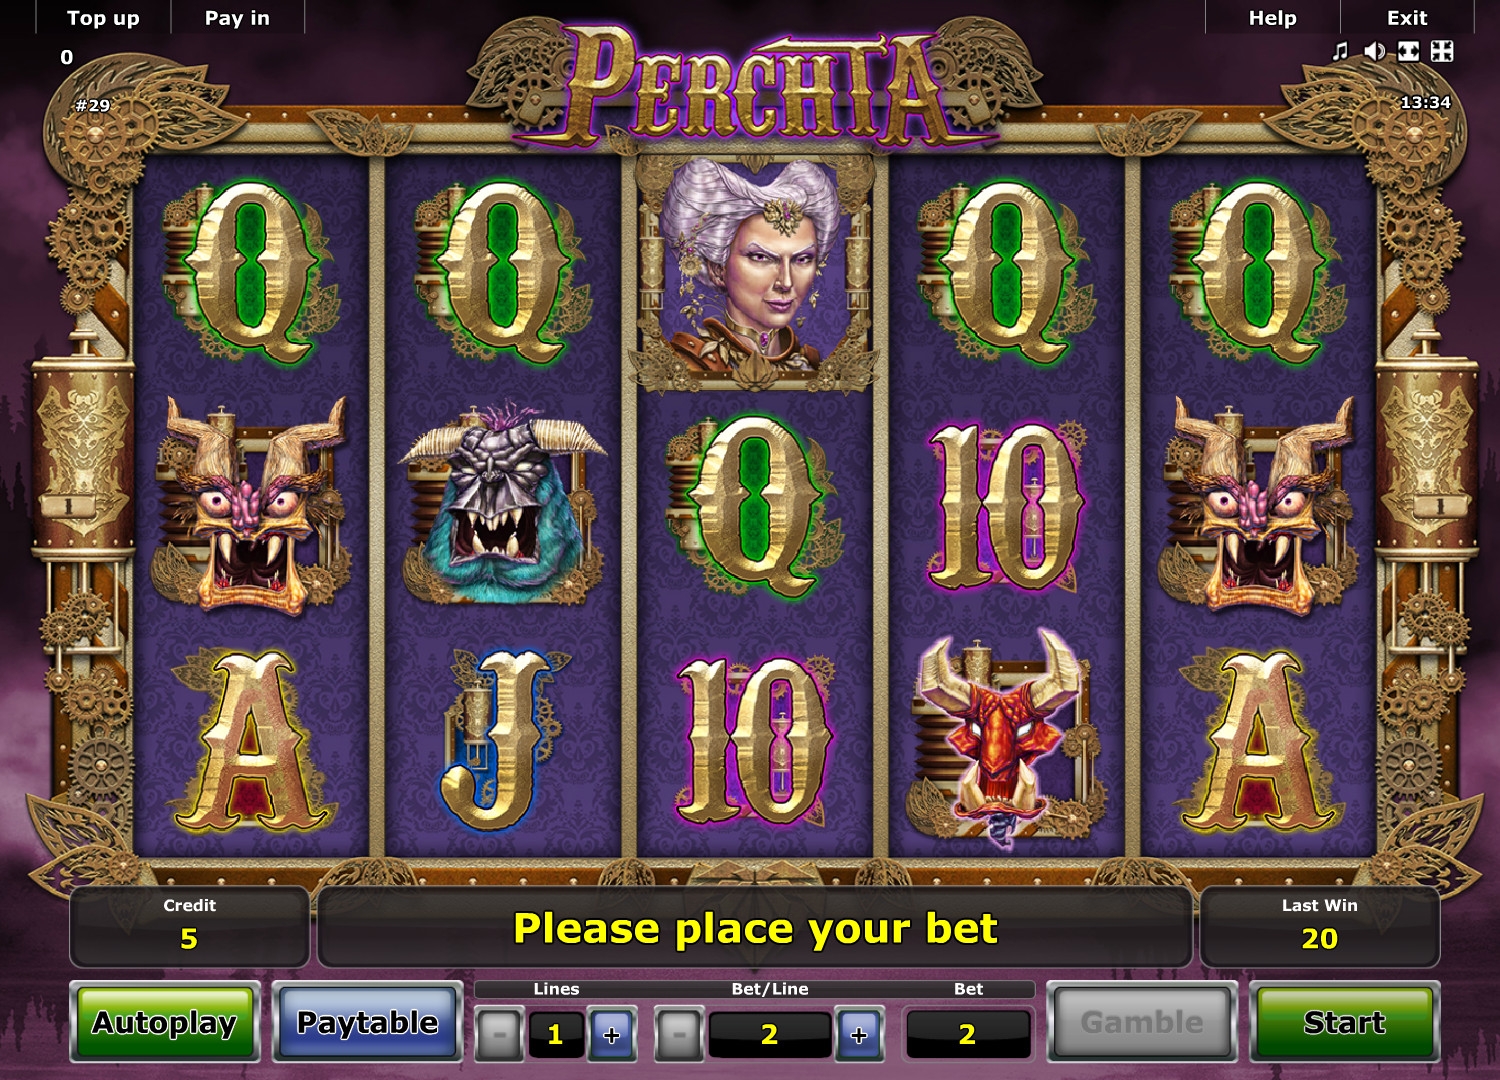 Perchta (Perchta) from category Slots